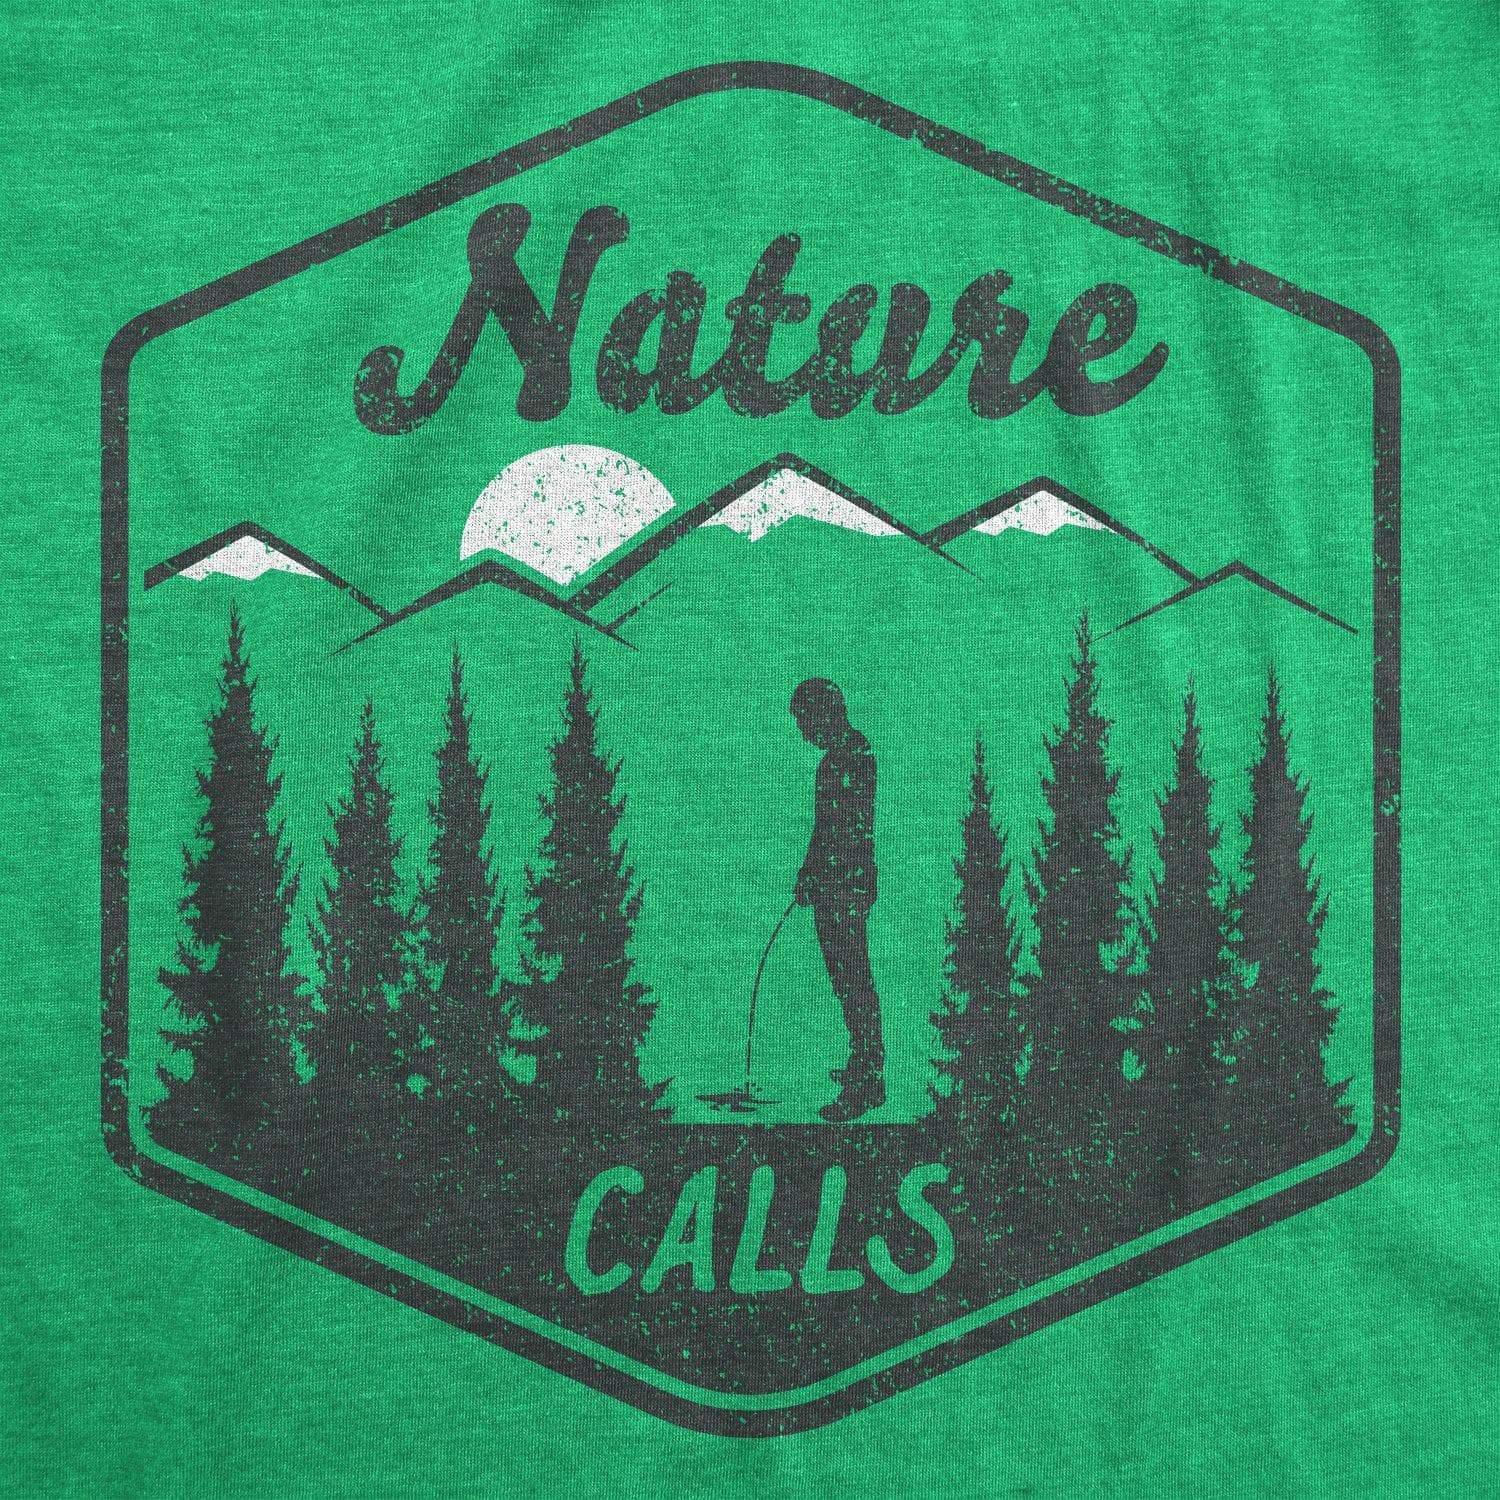 Nature Calls Men's Tshirt - Crazy Dog T-Shirts